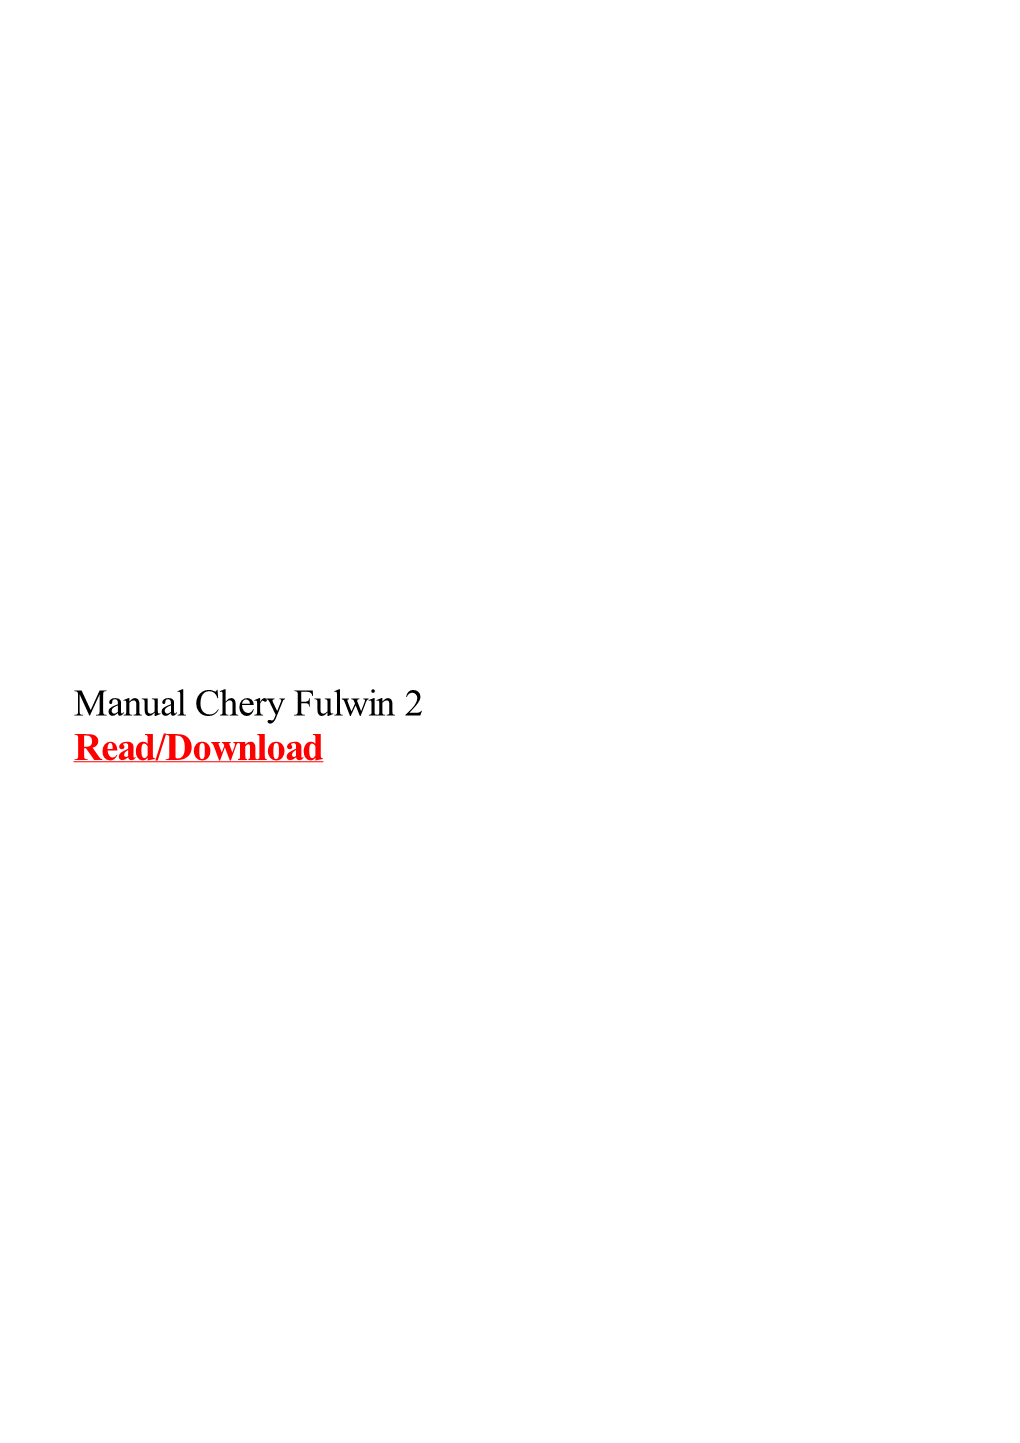 Manual Chery Fulwin 2